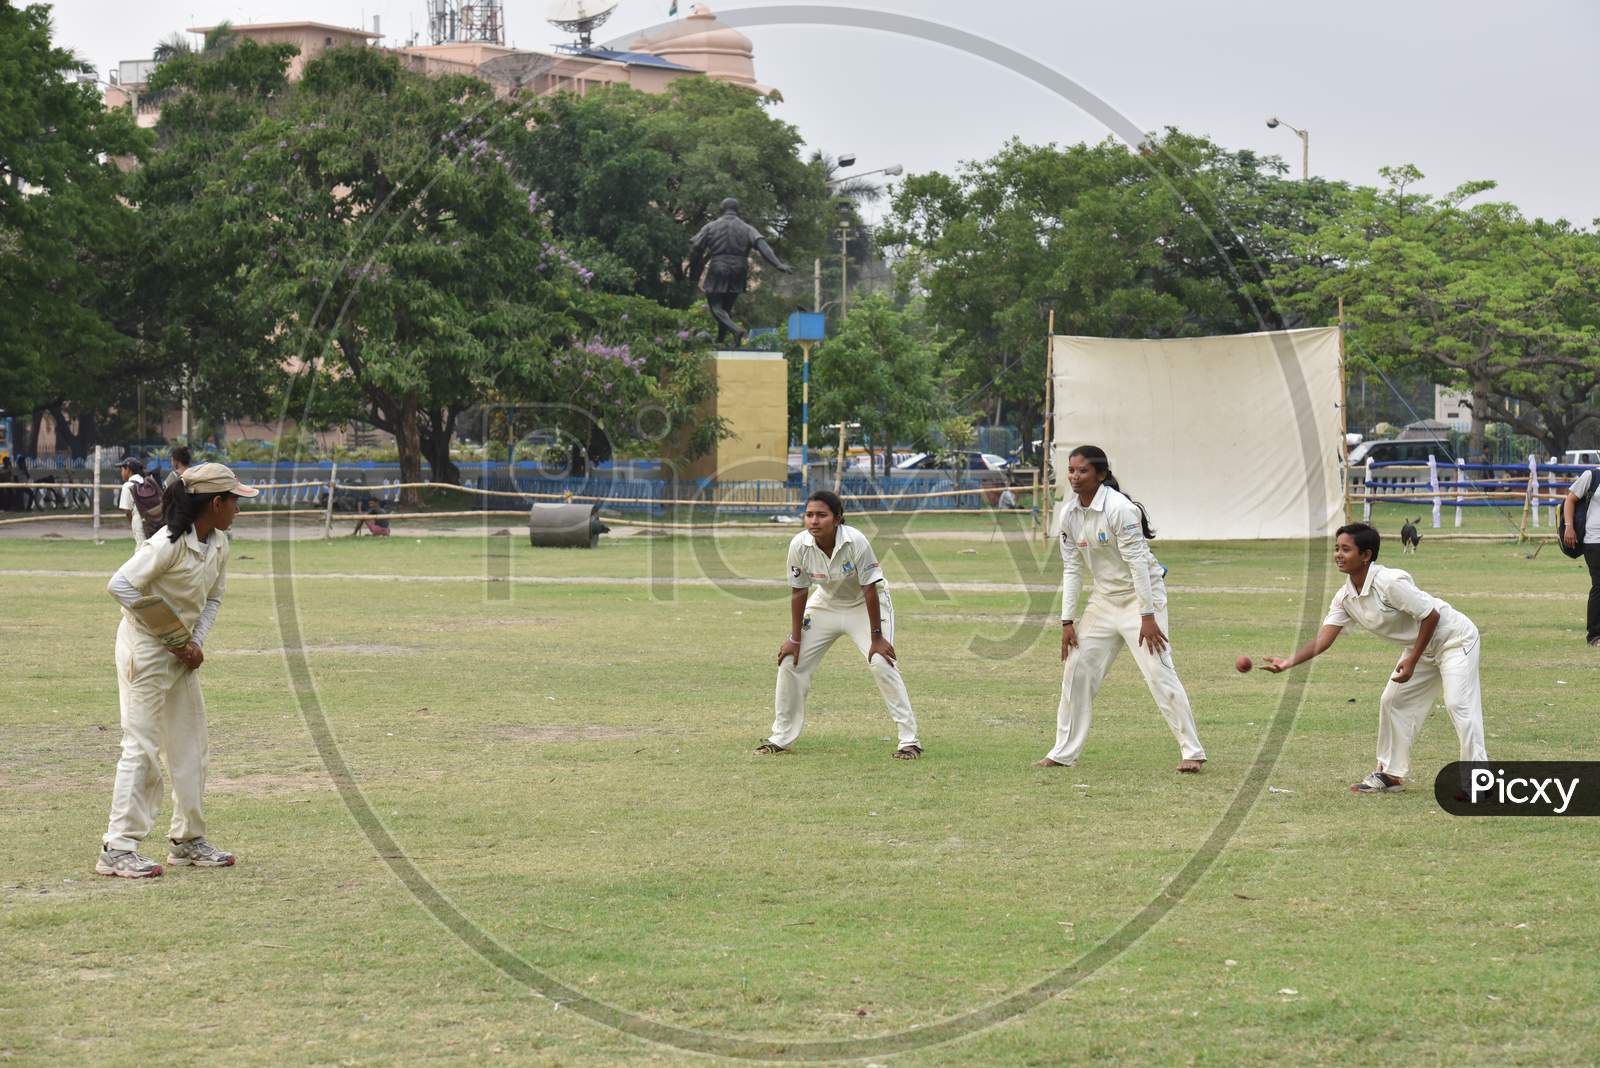 School girls practicing Cricket